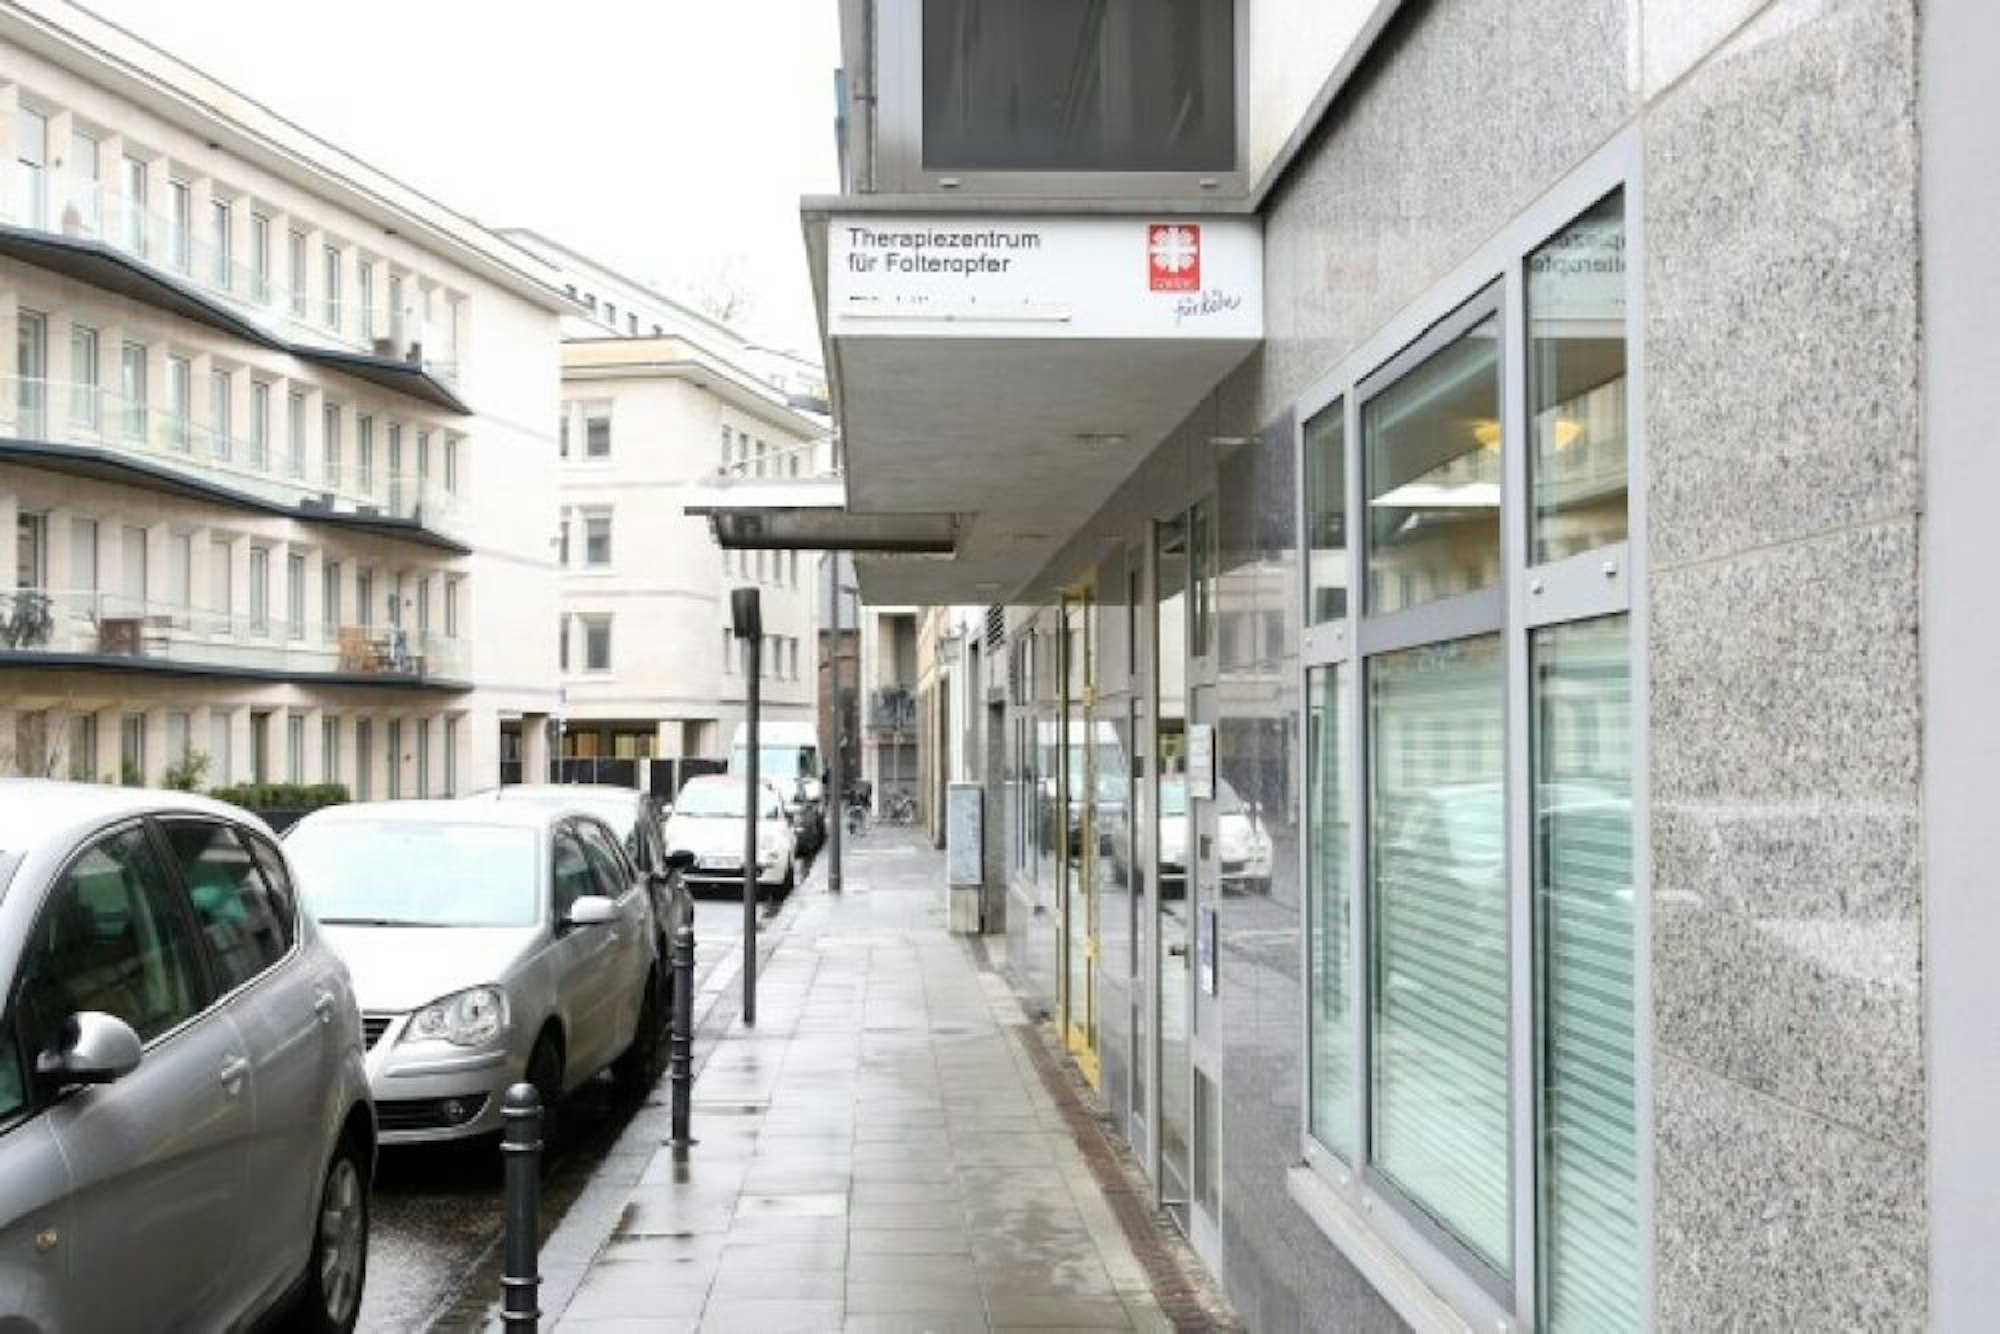 Das Therapiezentrum liegt am Rand des Gerling-Quartiers in der Kölner Innenstadt.